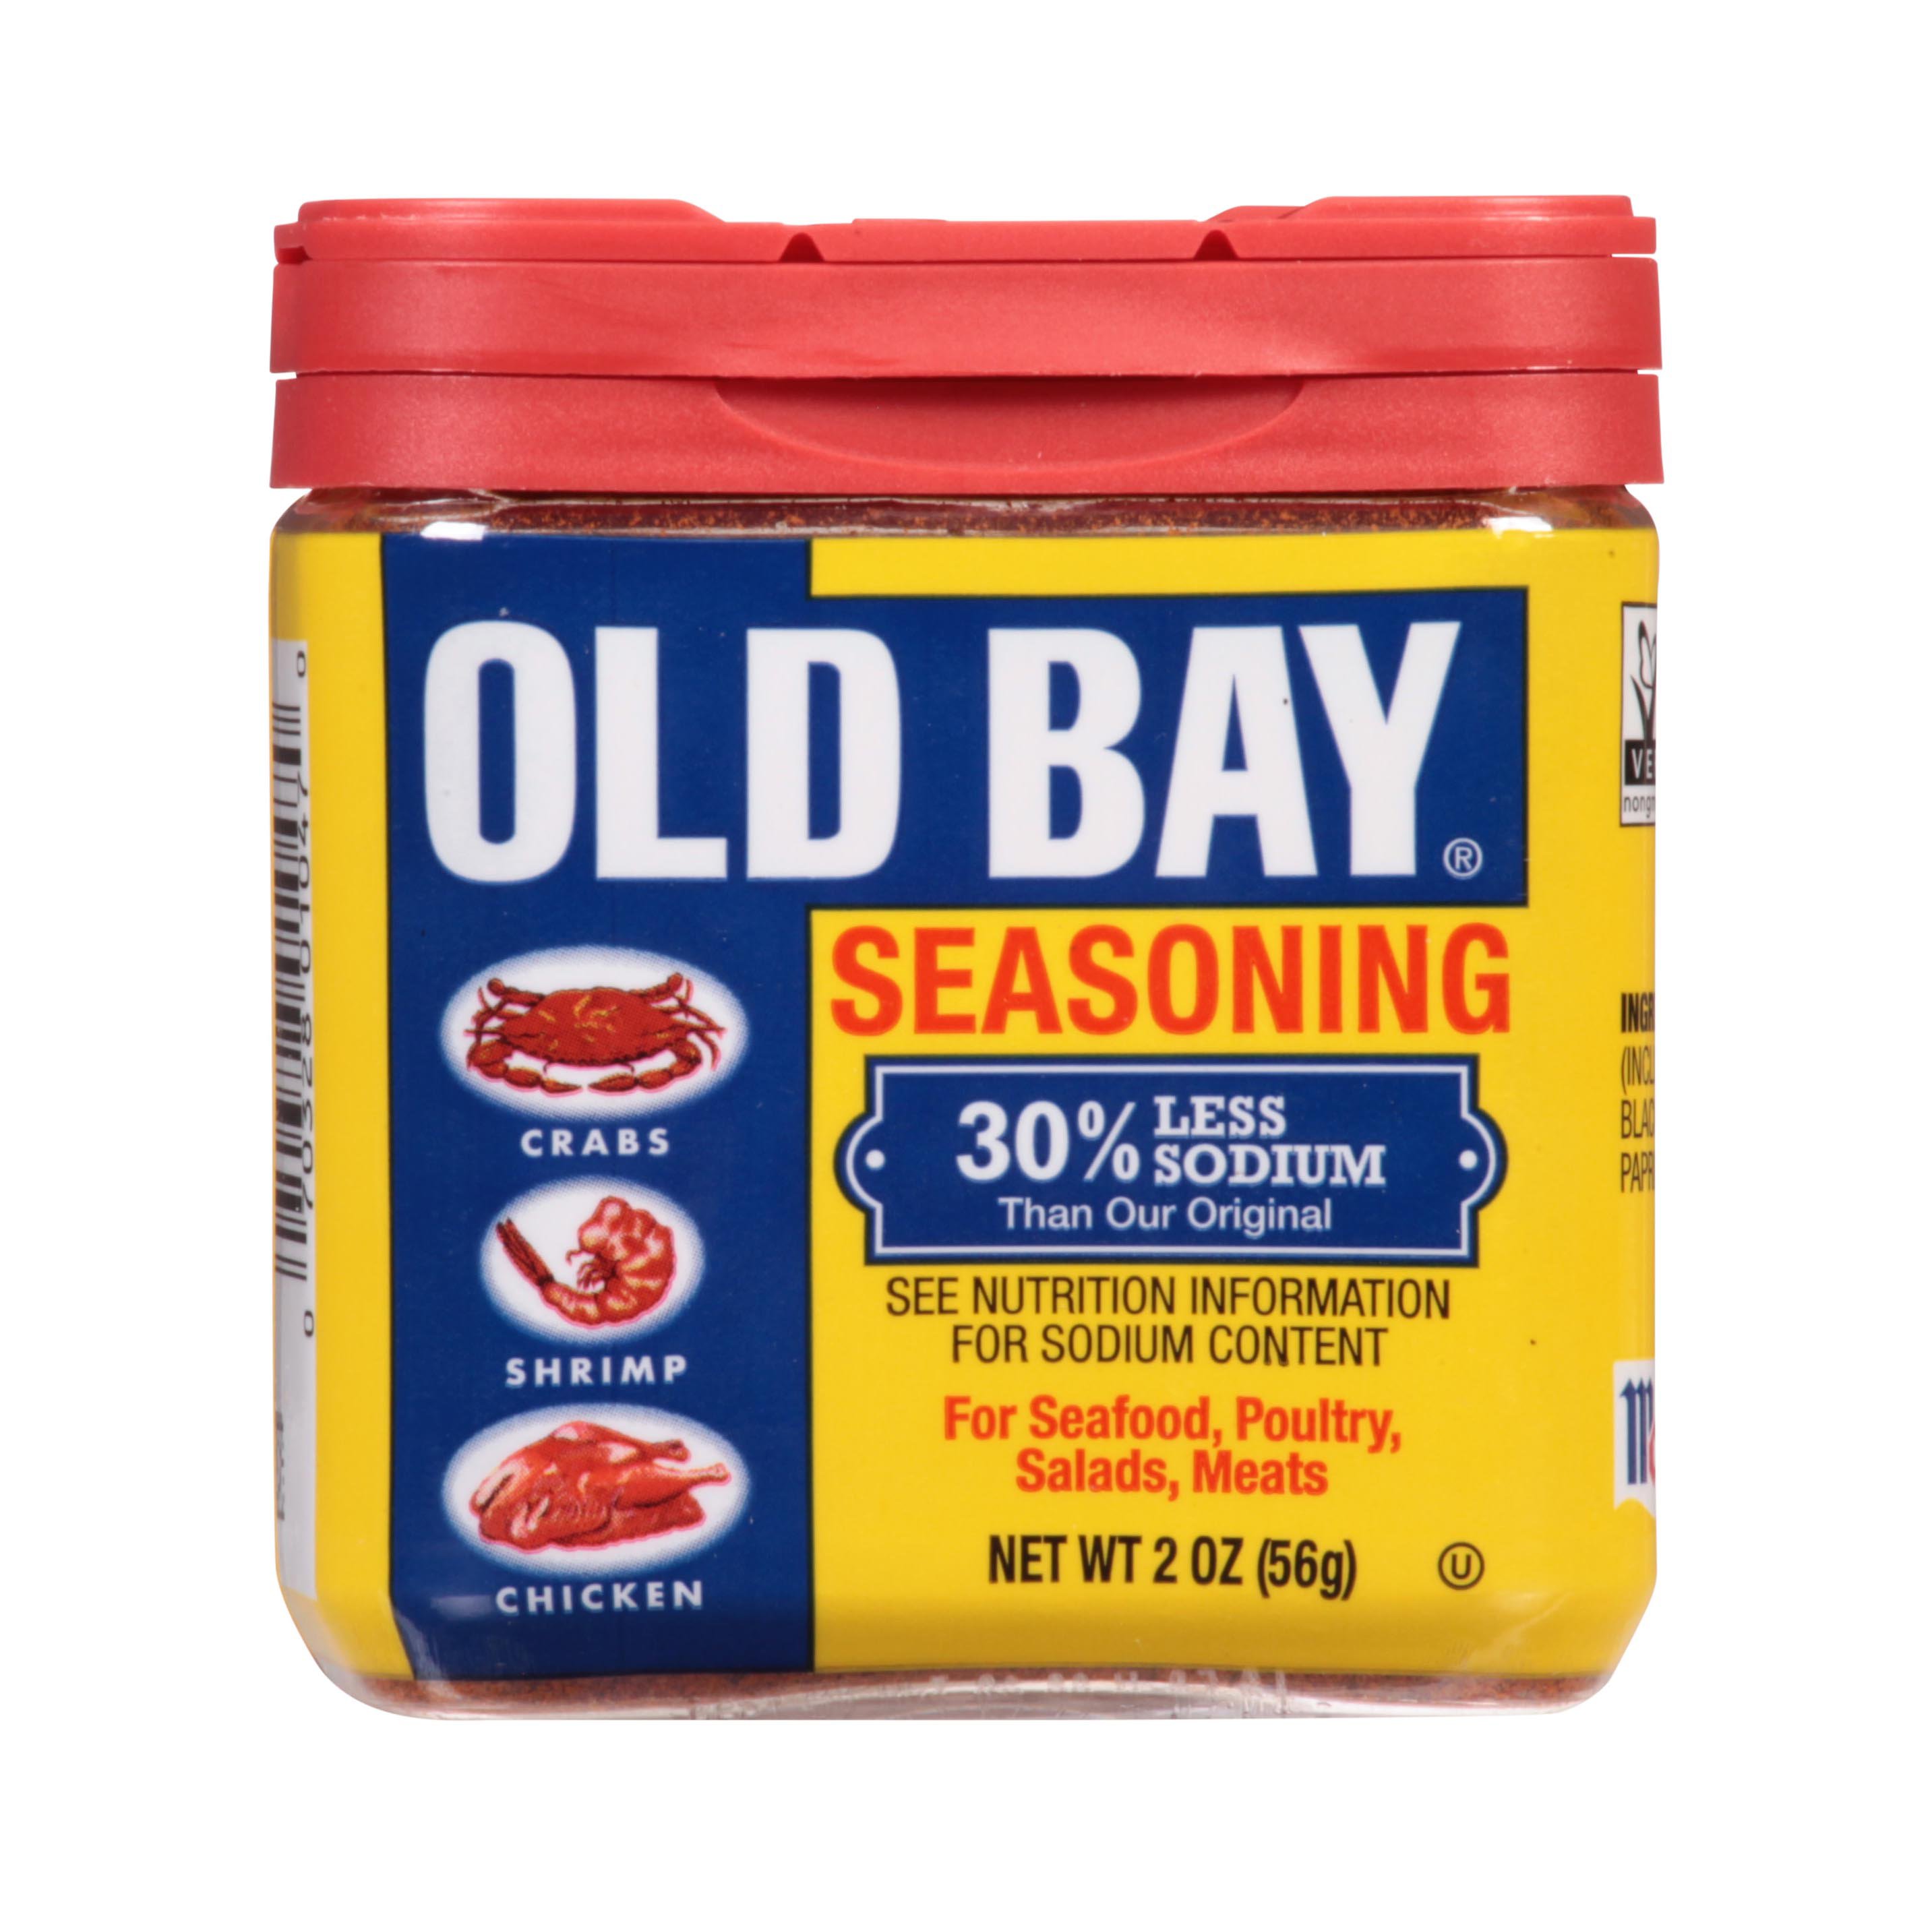 Old Bay 30% Less Sodium Seasoning - Shop Spice Mixes at H-E-B